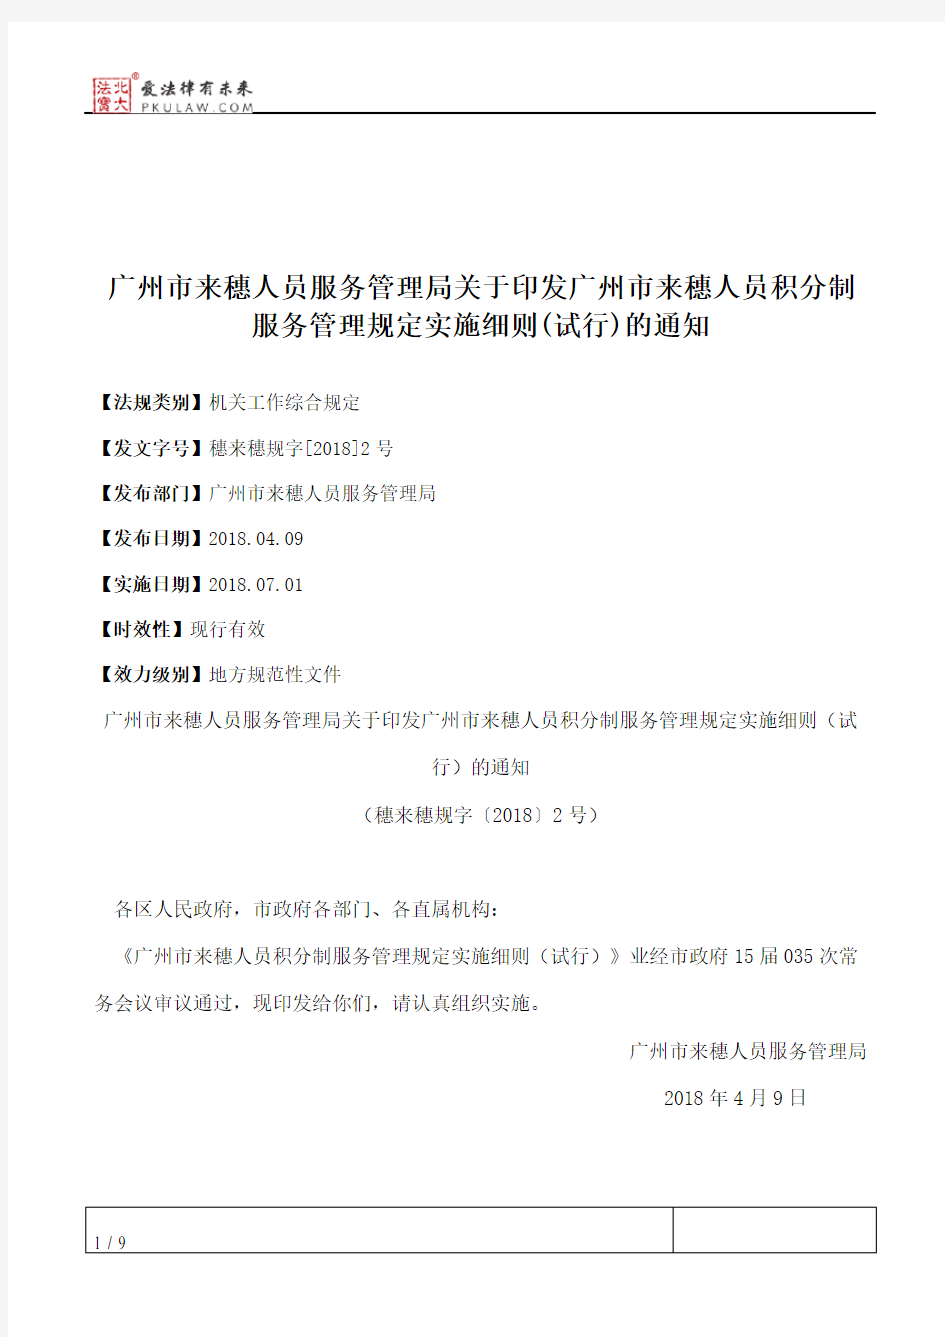 广州市来穗人员服务管理局关于印发广州市来穗人员积分制服务管理